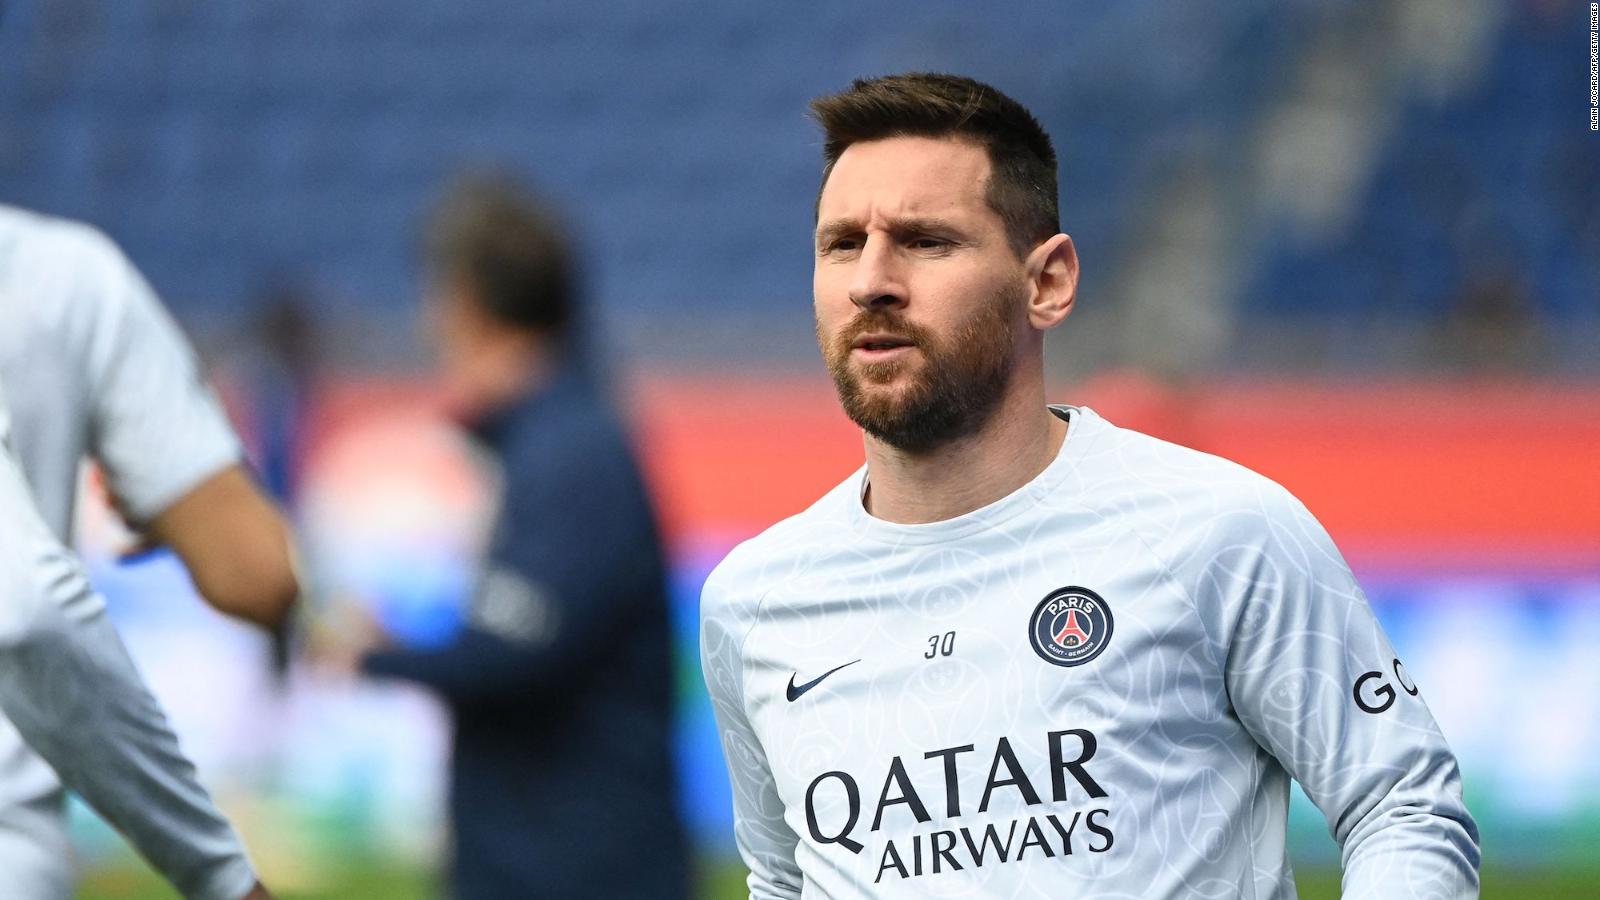 ¿Qué hacía Lionel Messi en Arabia Saudita? El viaje que provocó su
suspensión en el PSG